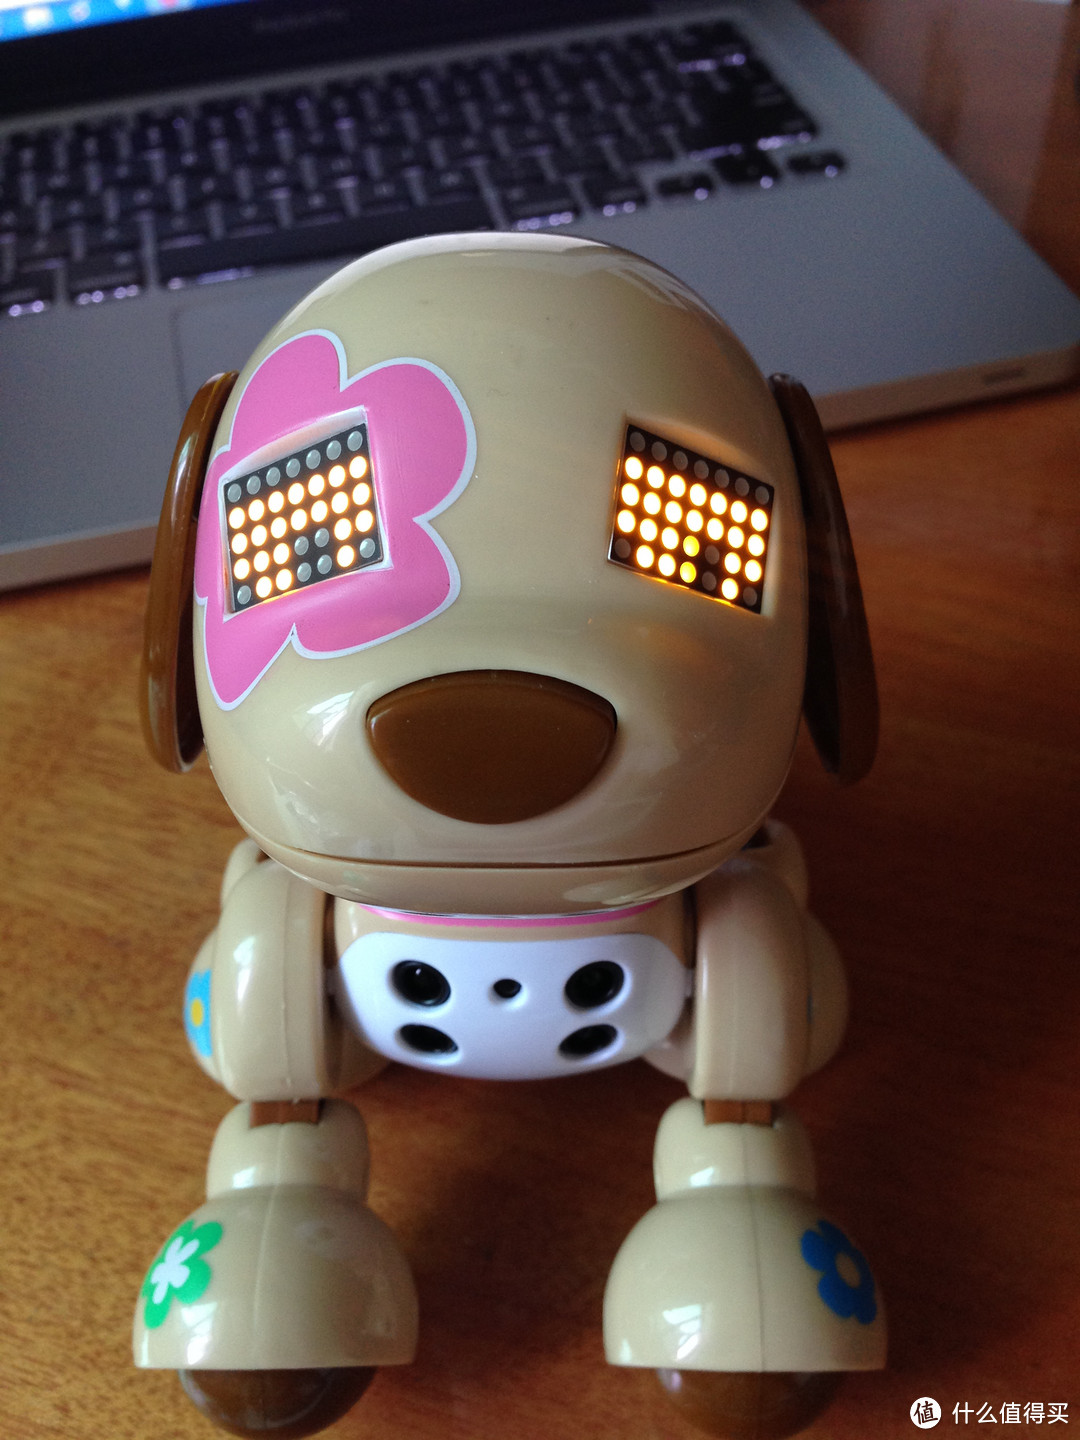 一切为了“孩子”：Zoomer Zuppies 智能声控互动机器狗&OWI T4 太阳能变形机器人